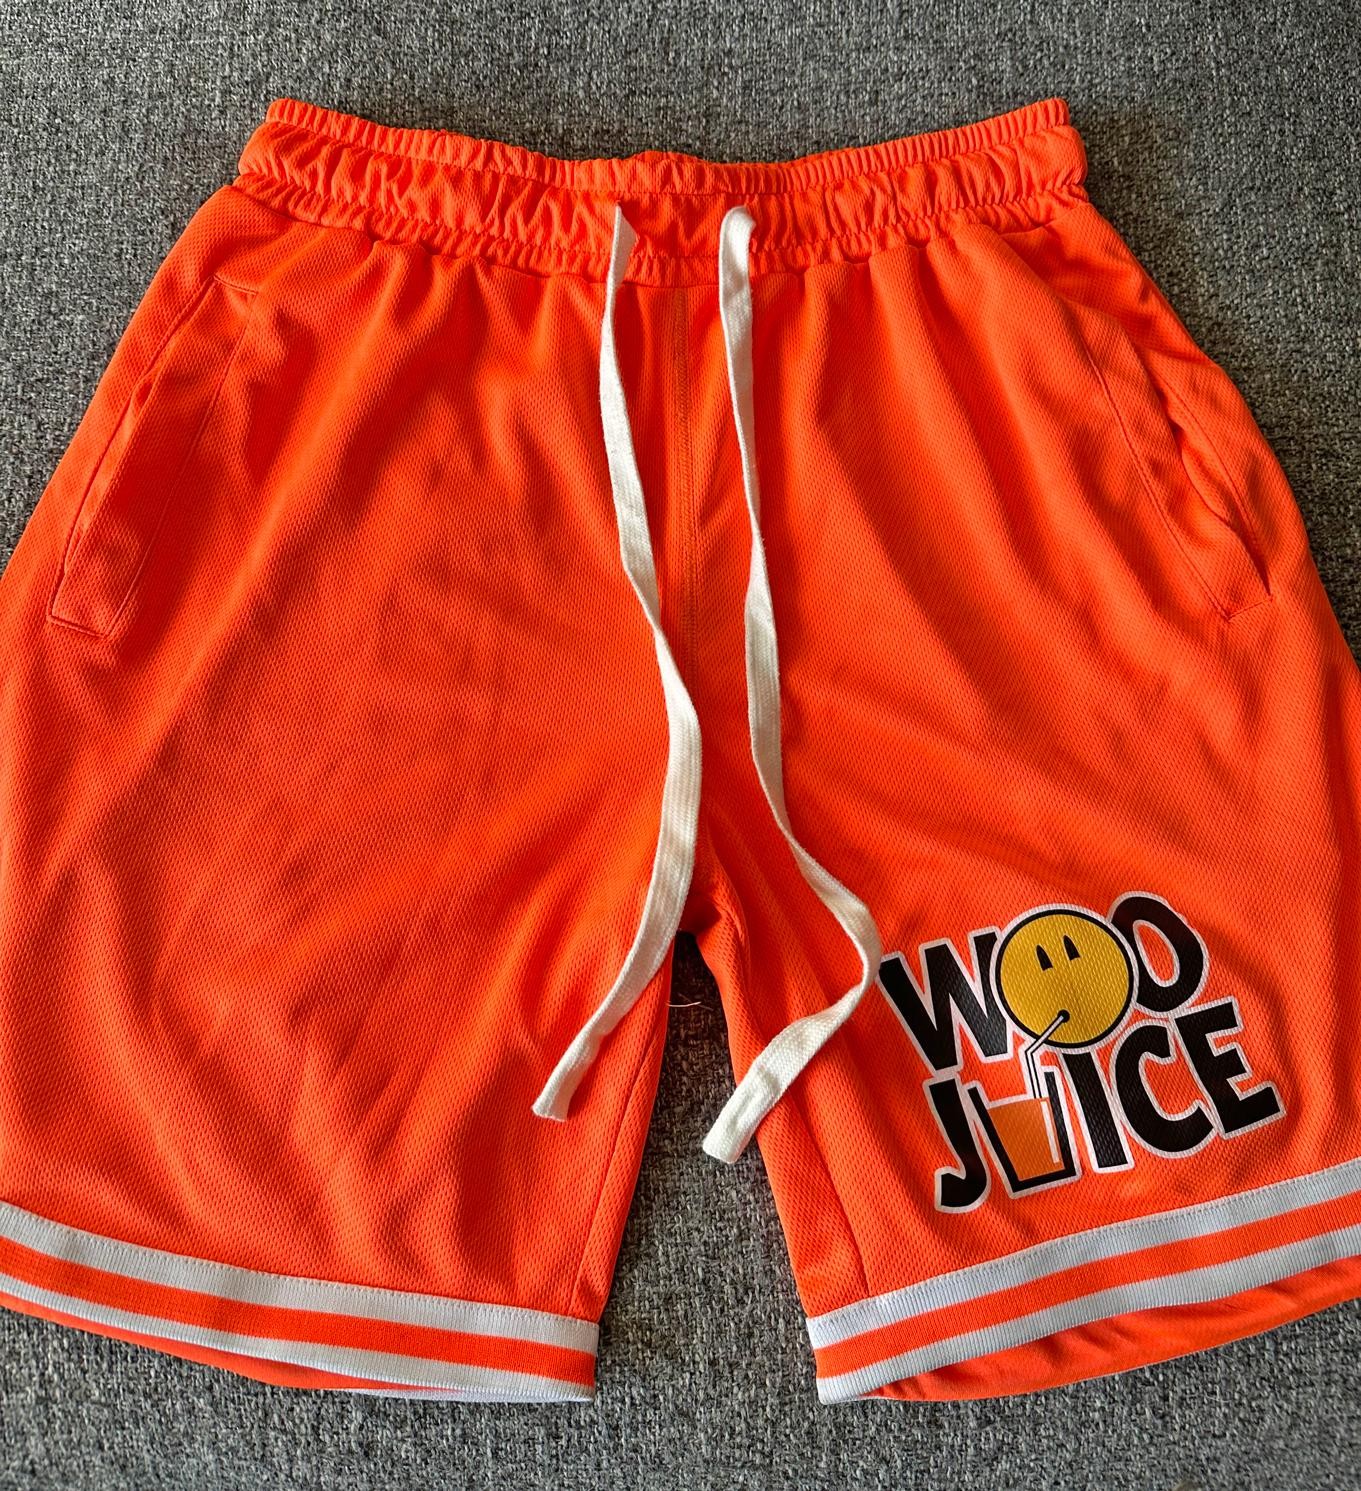 Orange 'Woo Juice' Shorts (SIZE LARGE)